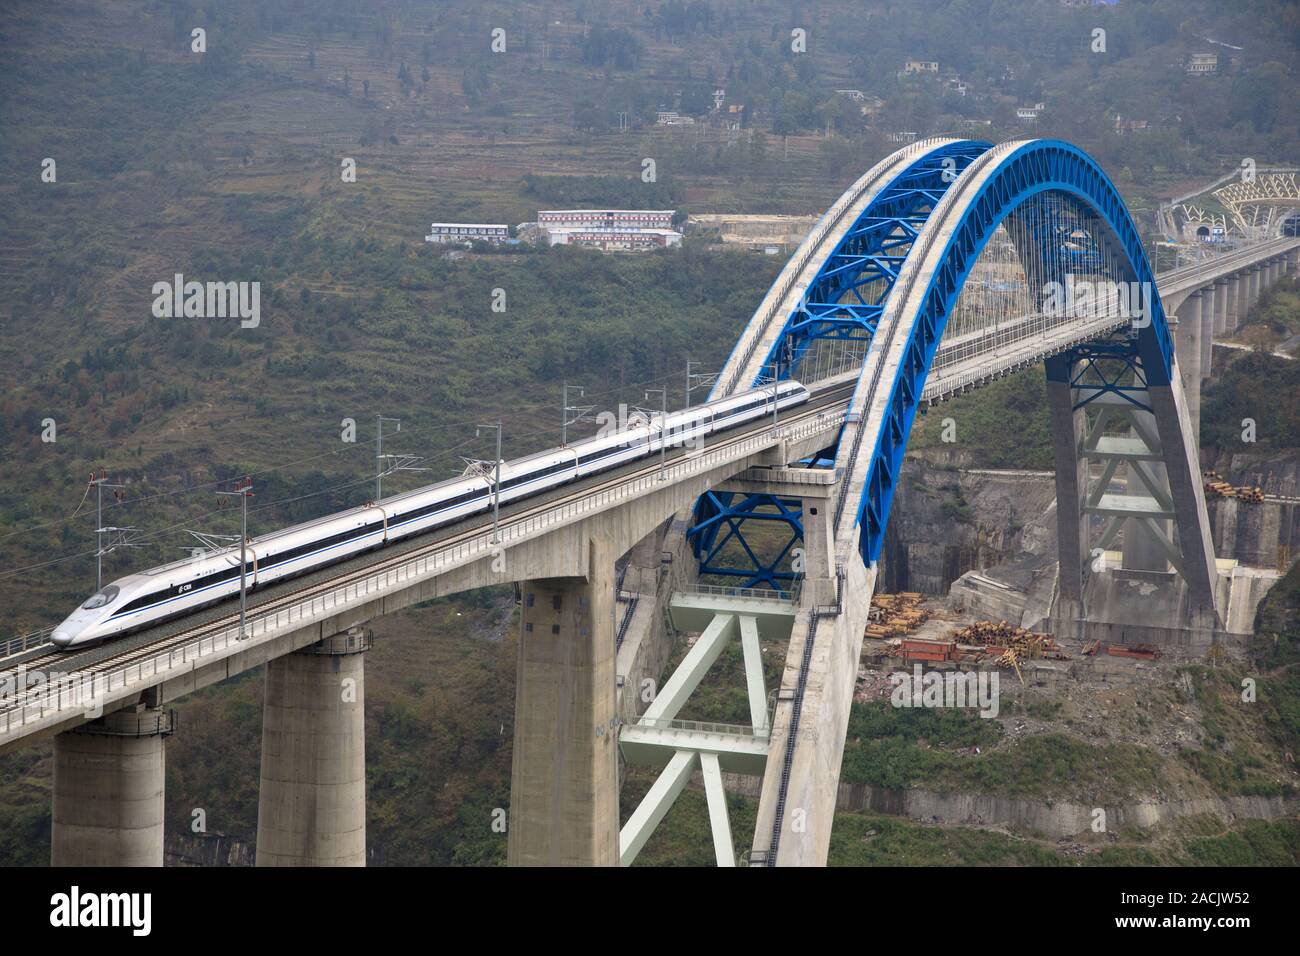 Bijie. 2. Dez, 2019. Ein Zug fährt die Brücke über den Fluss Yachi während eines Versuches Betrieb von Chengdu-Guiyang high-speed Railway im Südwesten Chinas Provinz Guizhou, Dez. 2, 2019. Die 650 Kilometer lange Bahn ist ein wichtiger Bestandteil des Hochgeschwindigkeitsnetzes bestehend aus acht wichtigsten Nord-Süd-Linien und die acht wichtigsten Ost-West-Linien, mit einer Höchstgeschwindigkeit von 250 Kilometer pro Stunde. Credit: Liu Xu/Xinhua/Alamy leben Nachrichten Stockfoto